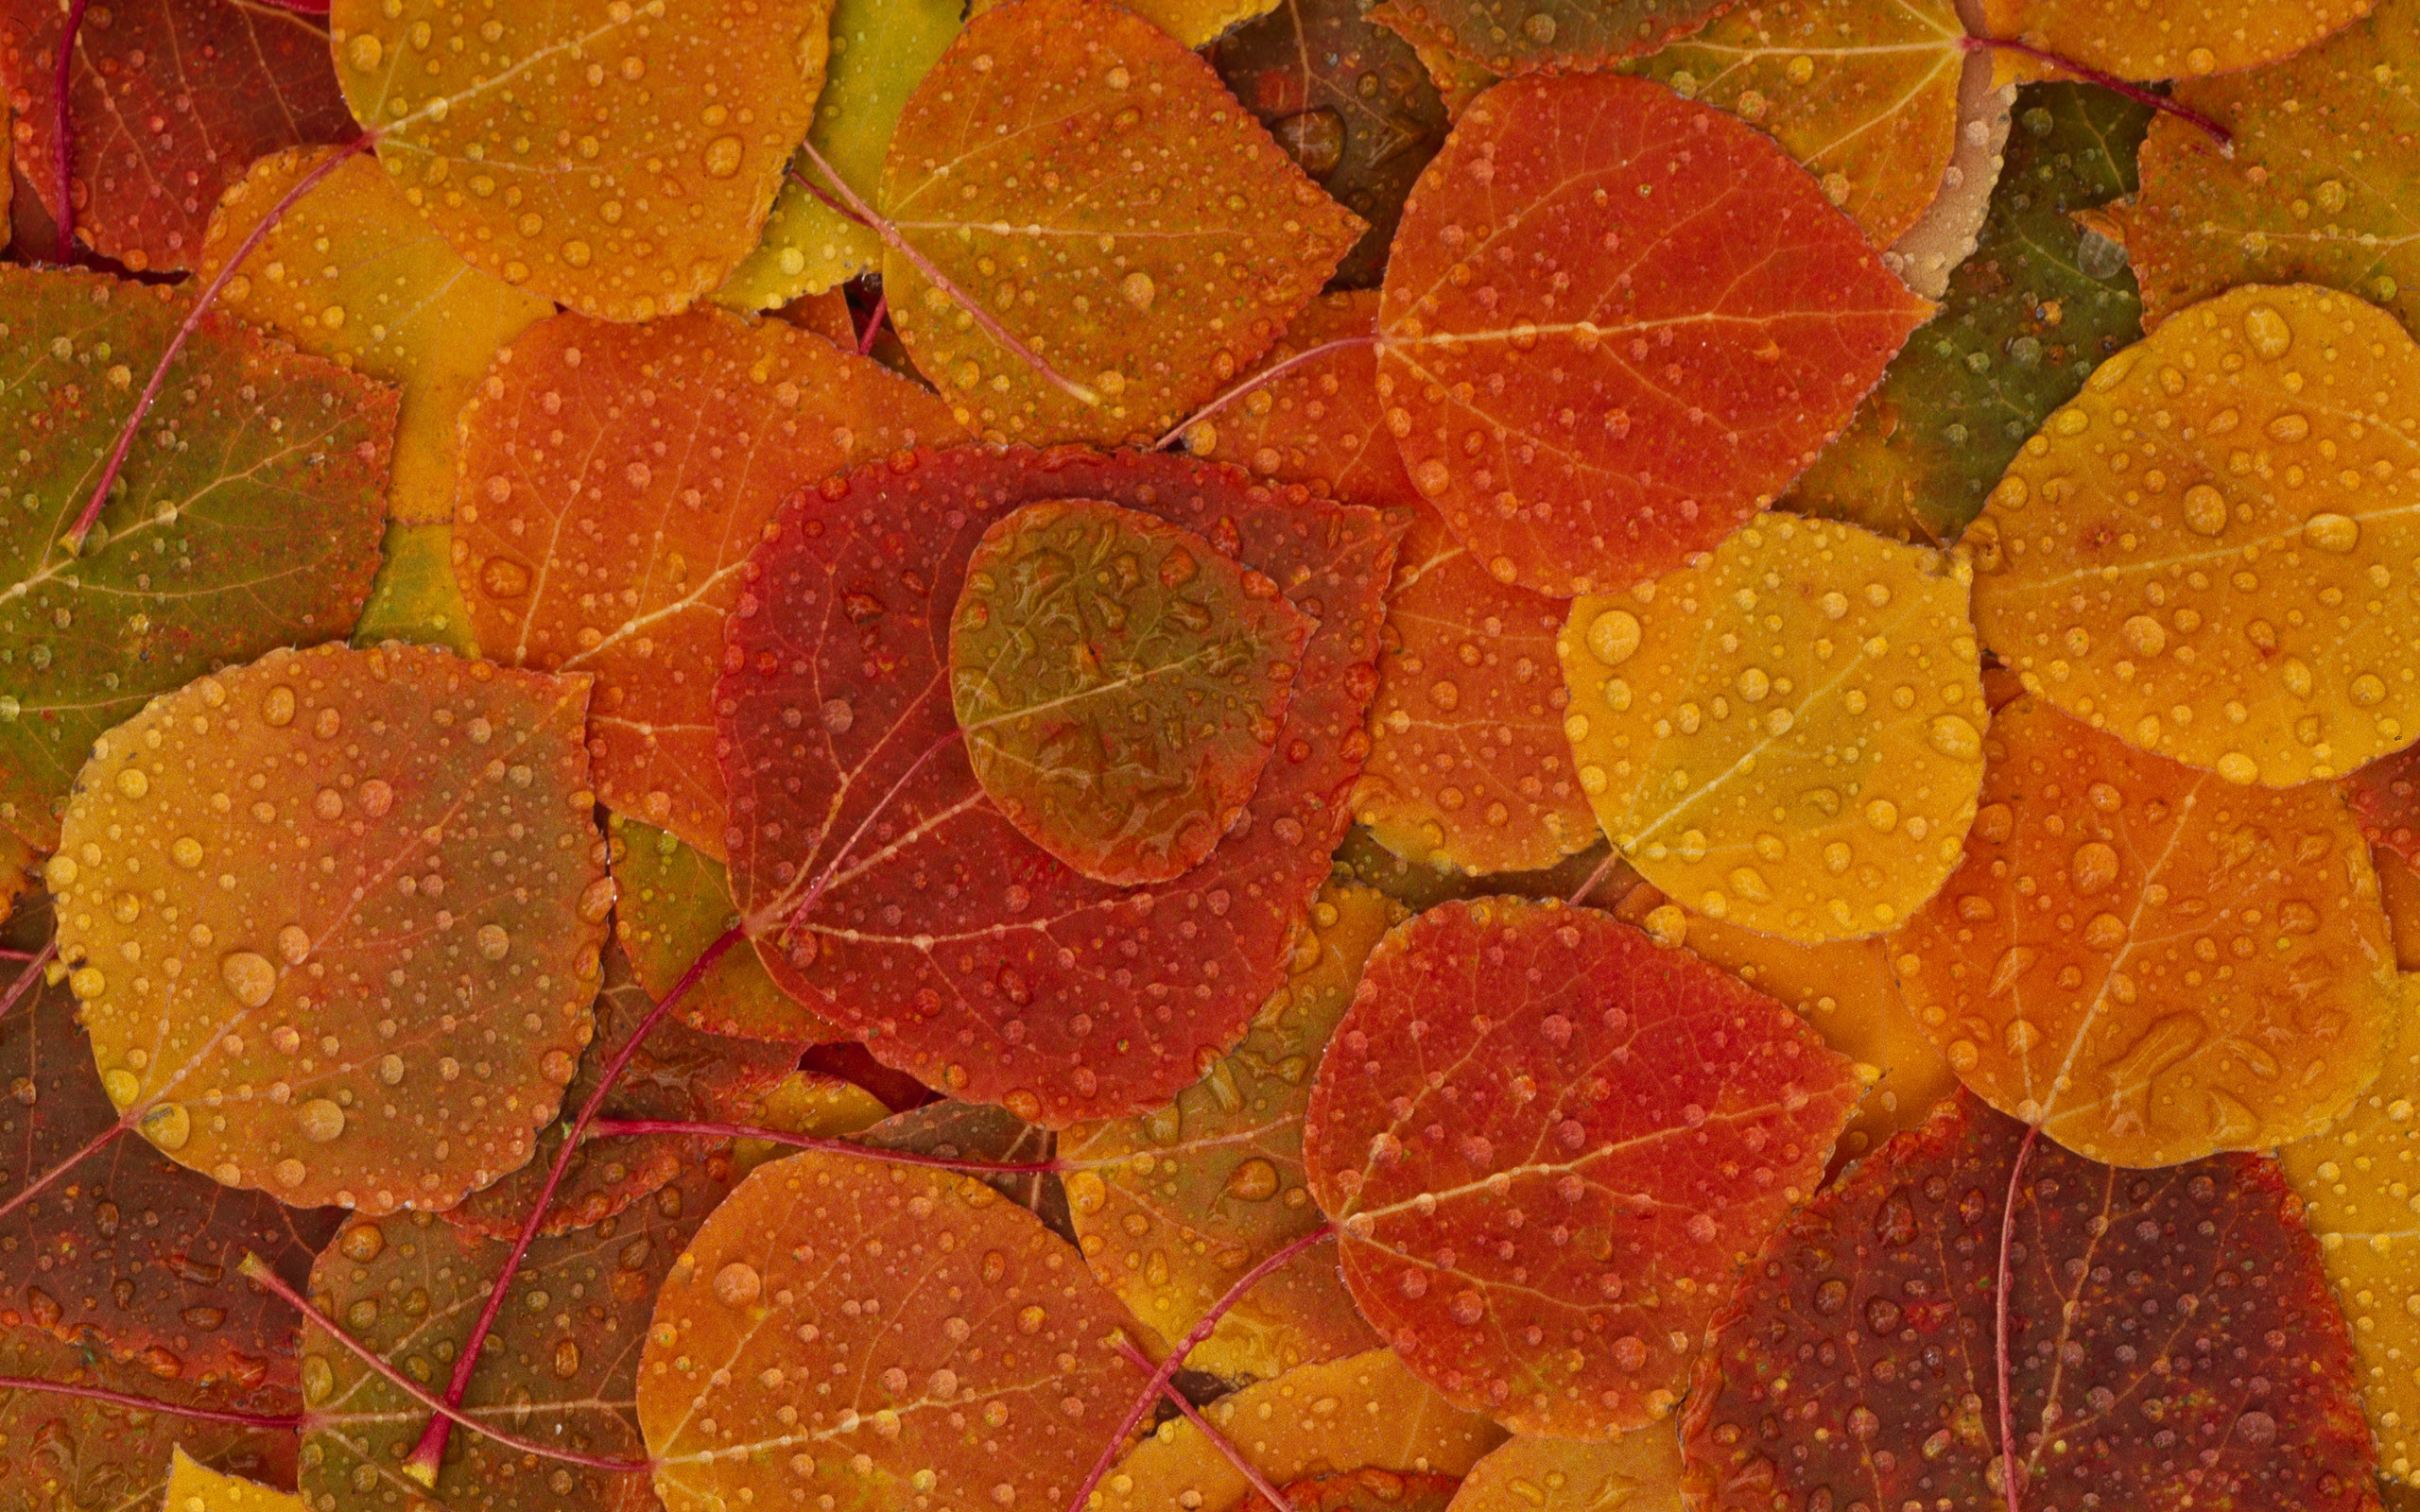 Desktop wallpaper fall foliage – www.wallpapers in hd.com